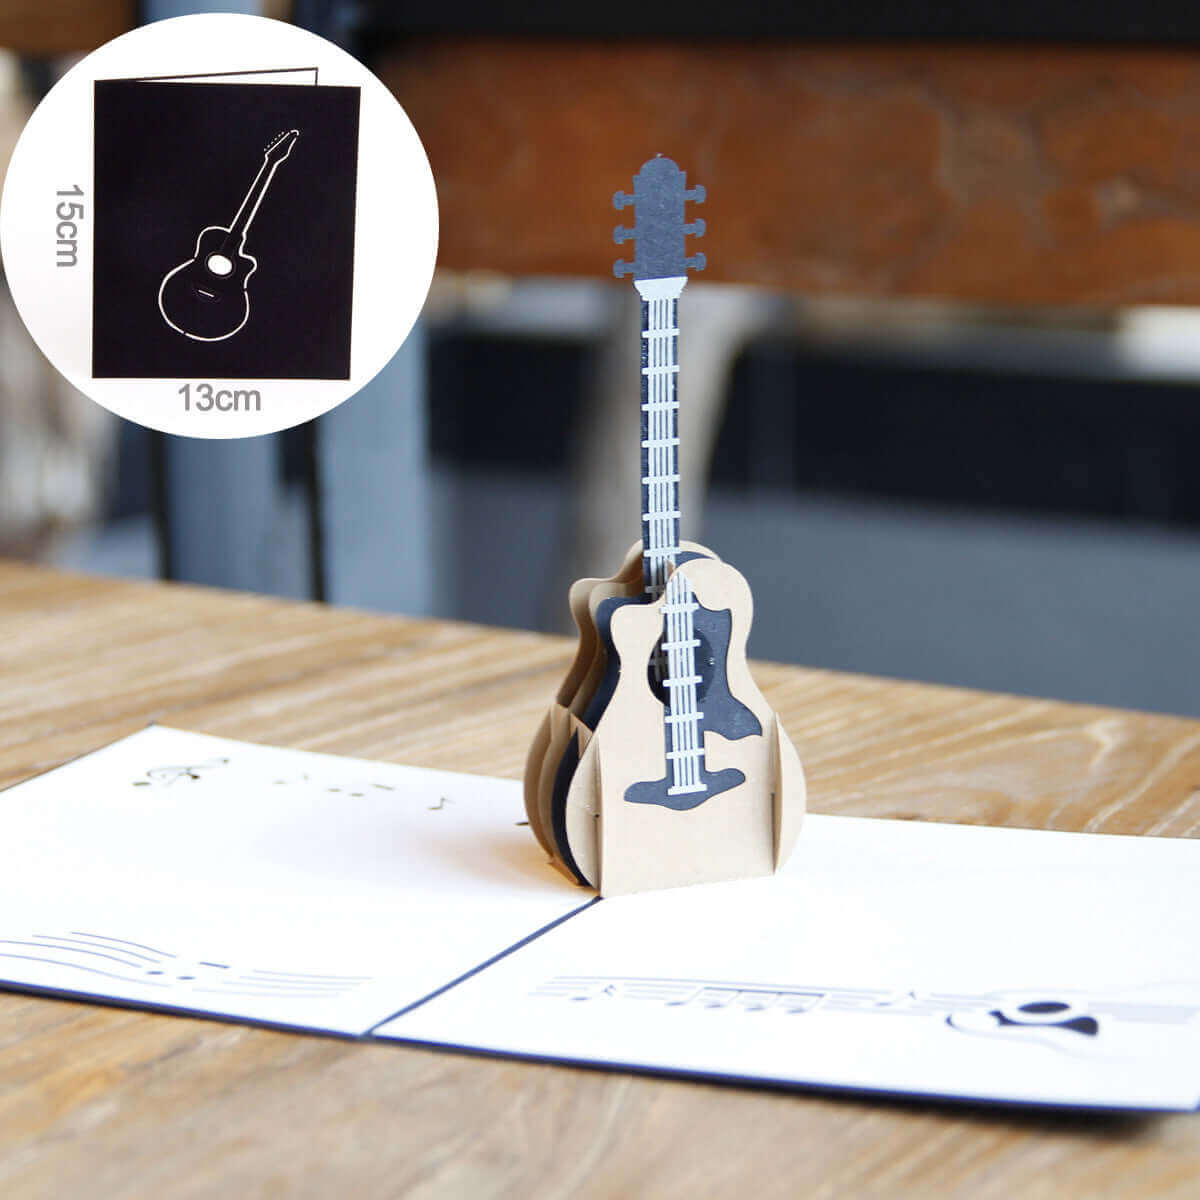 3D Guitar foldable card guitarmetrics